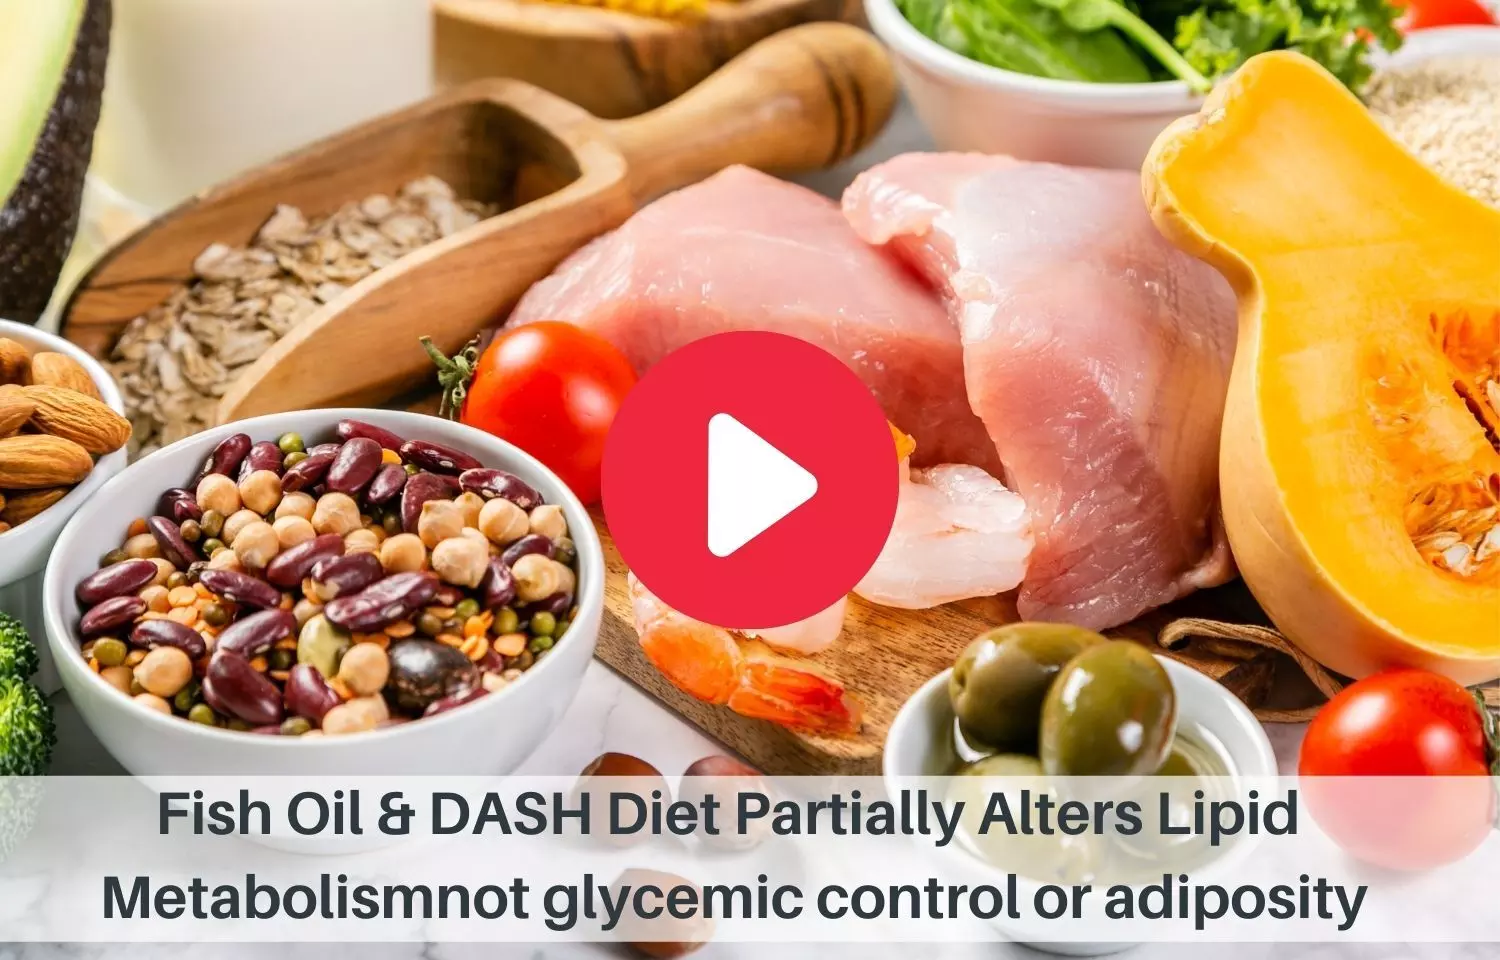 Fish oil, dash diet partially alters lipid metabolism